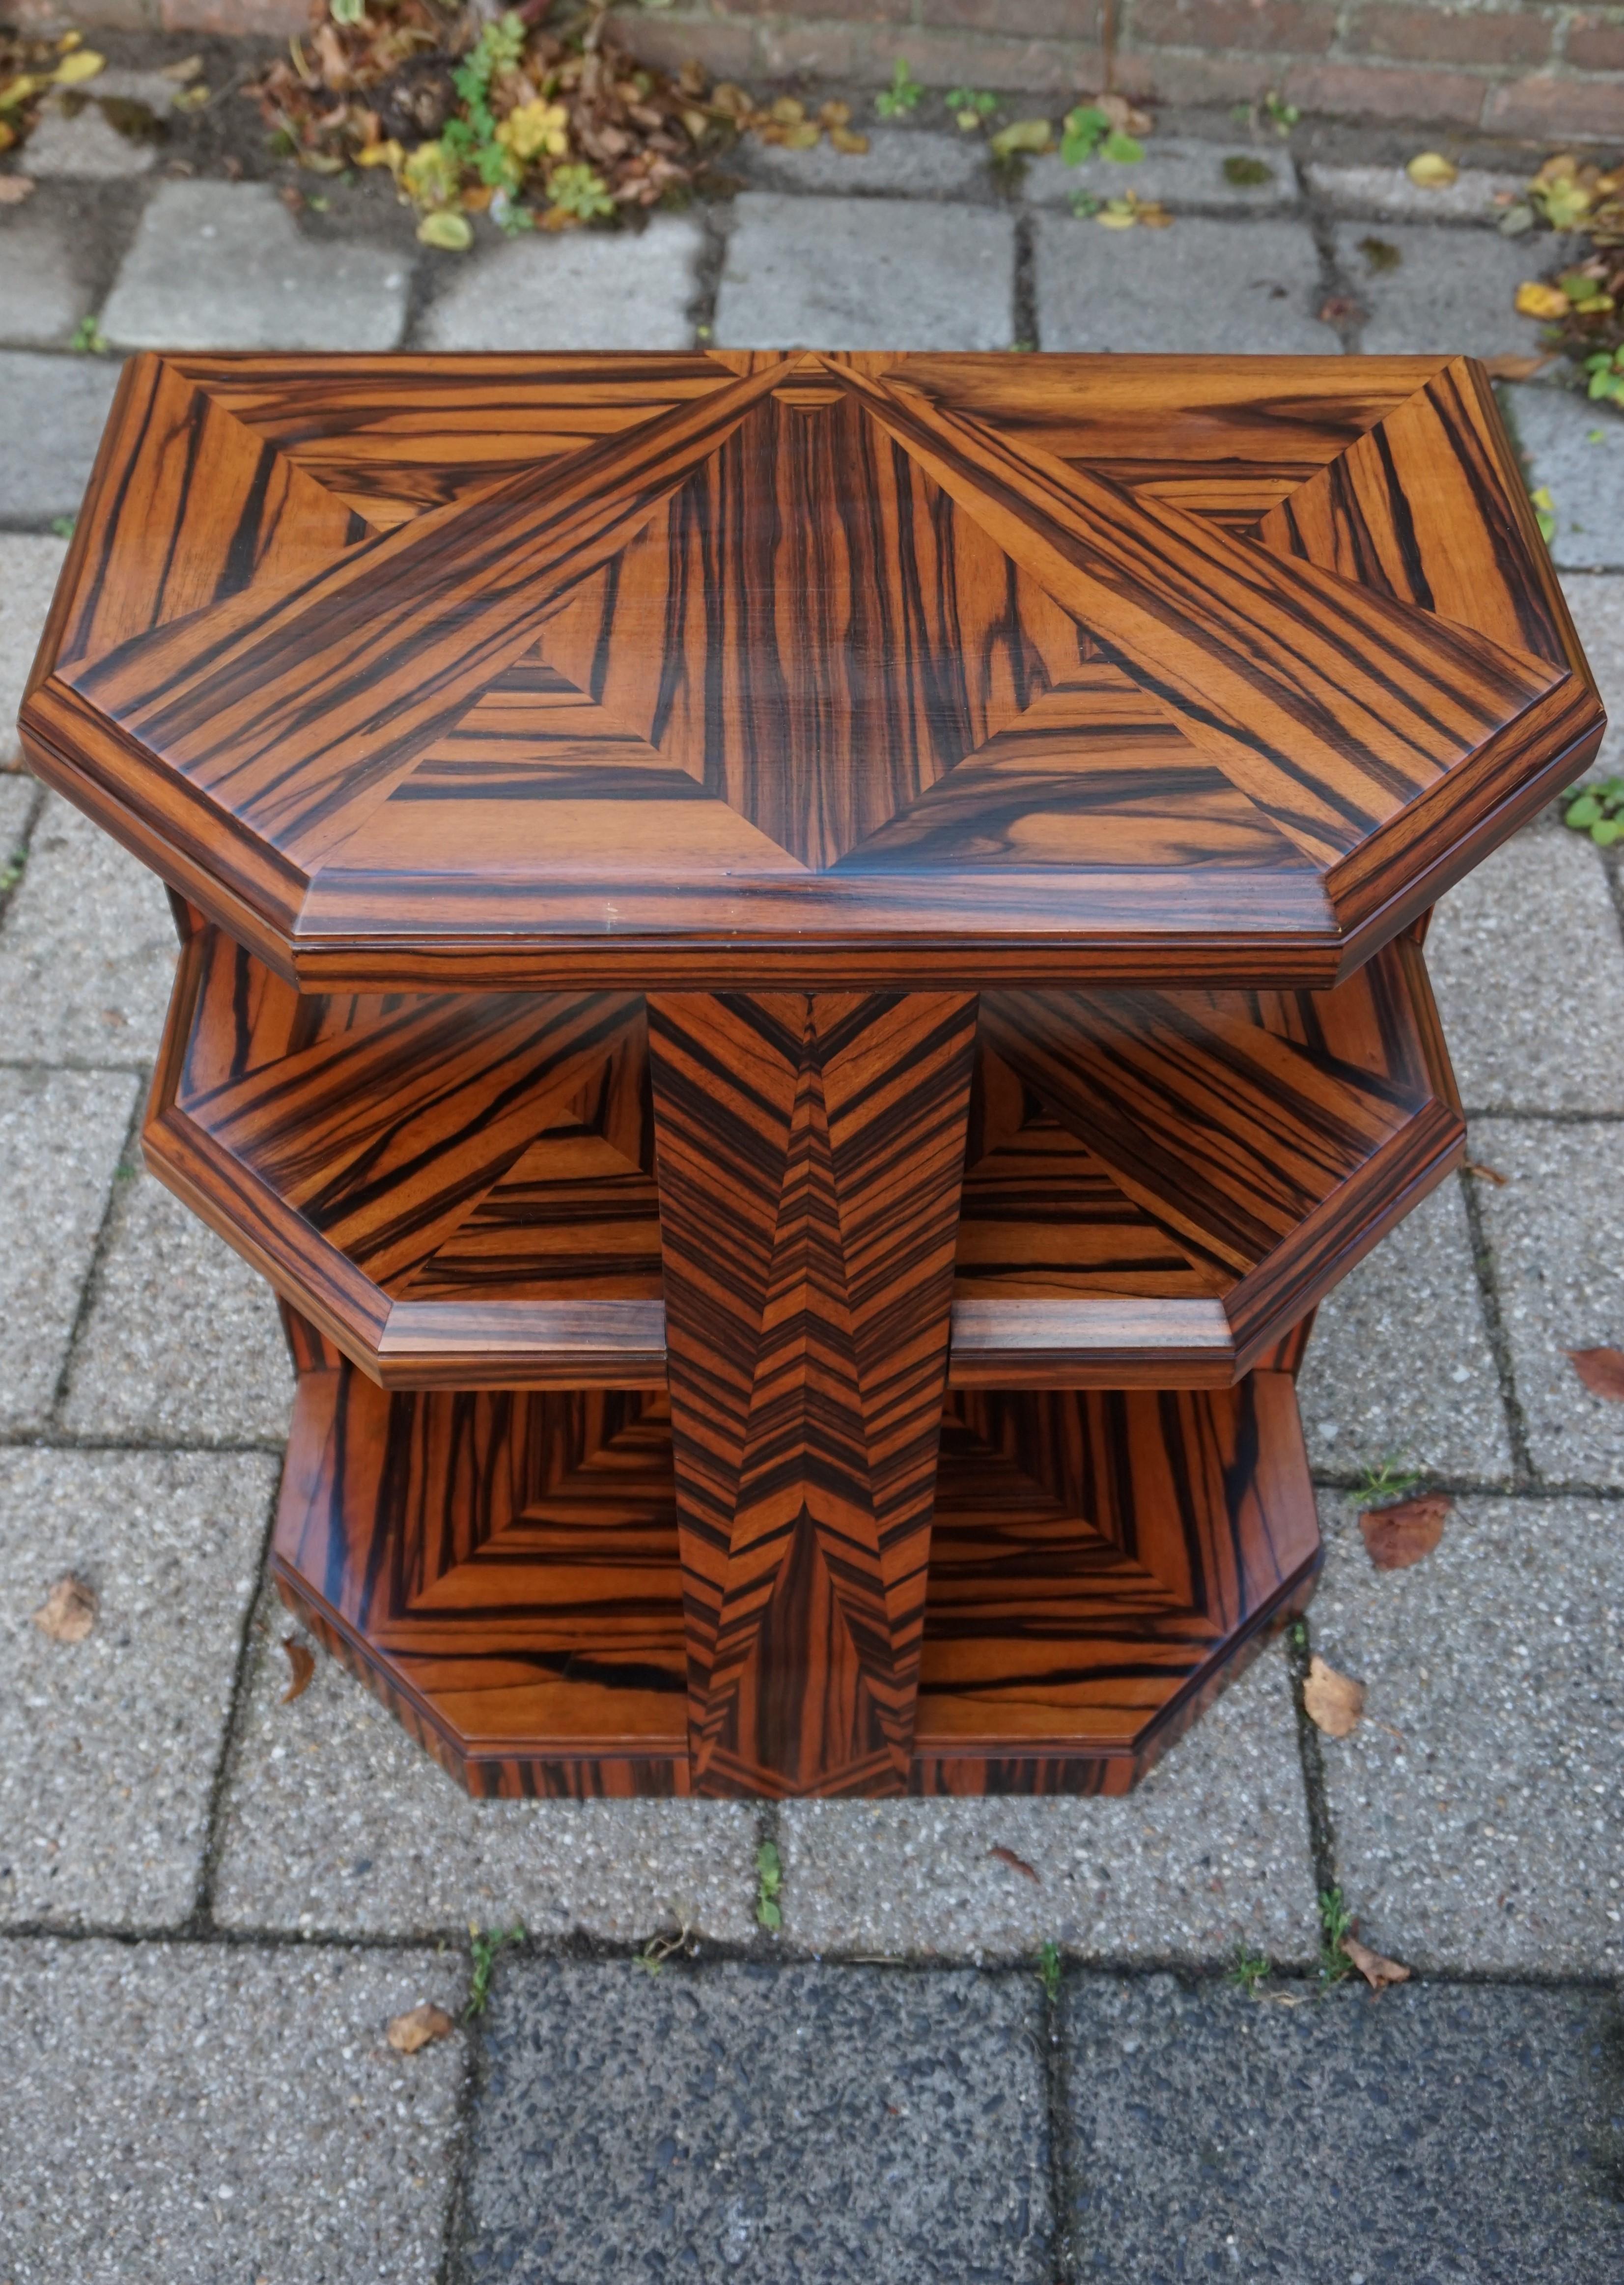 Unique Coromandel Art Deco Étagère Table with Stunning Inlaid Geometric Patterns 7